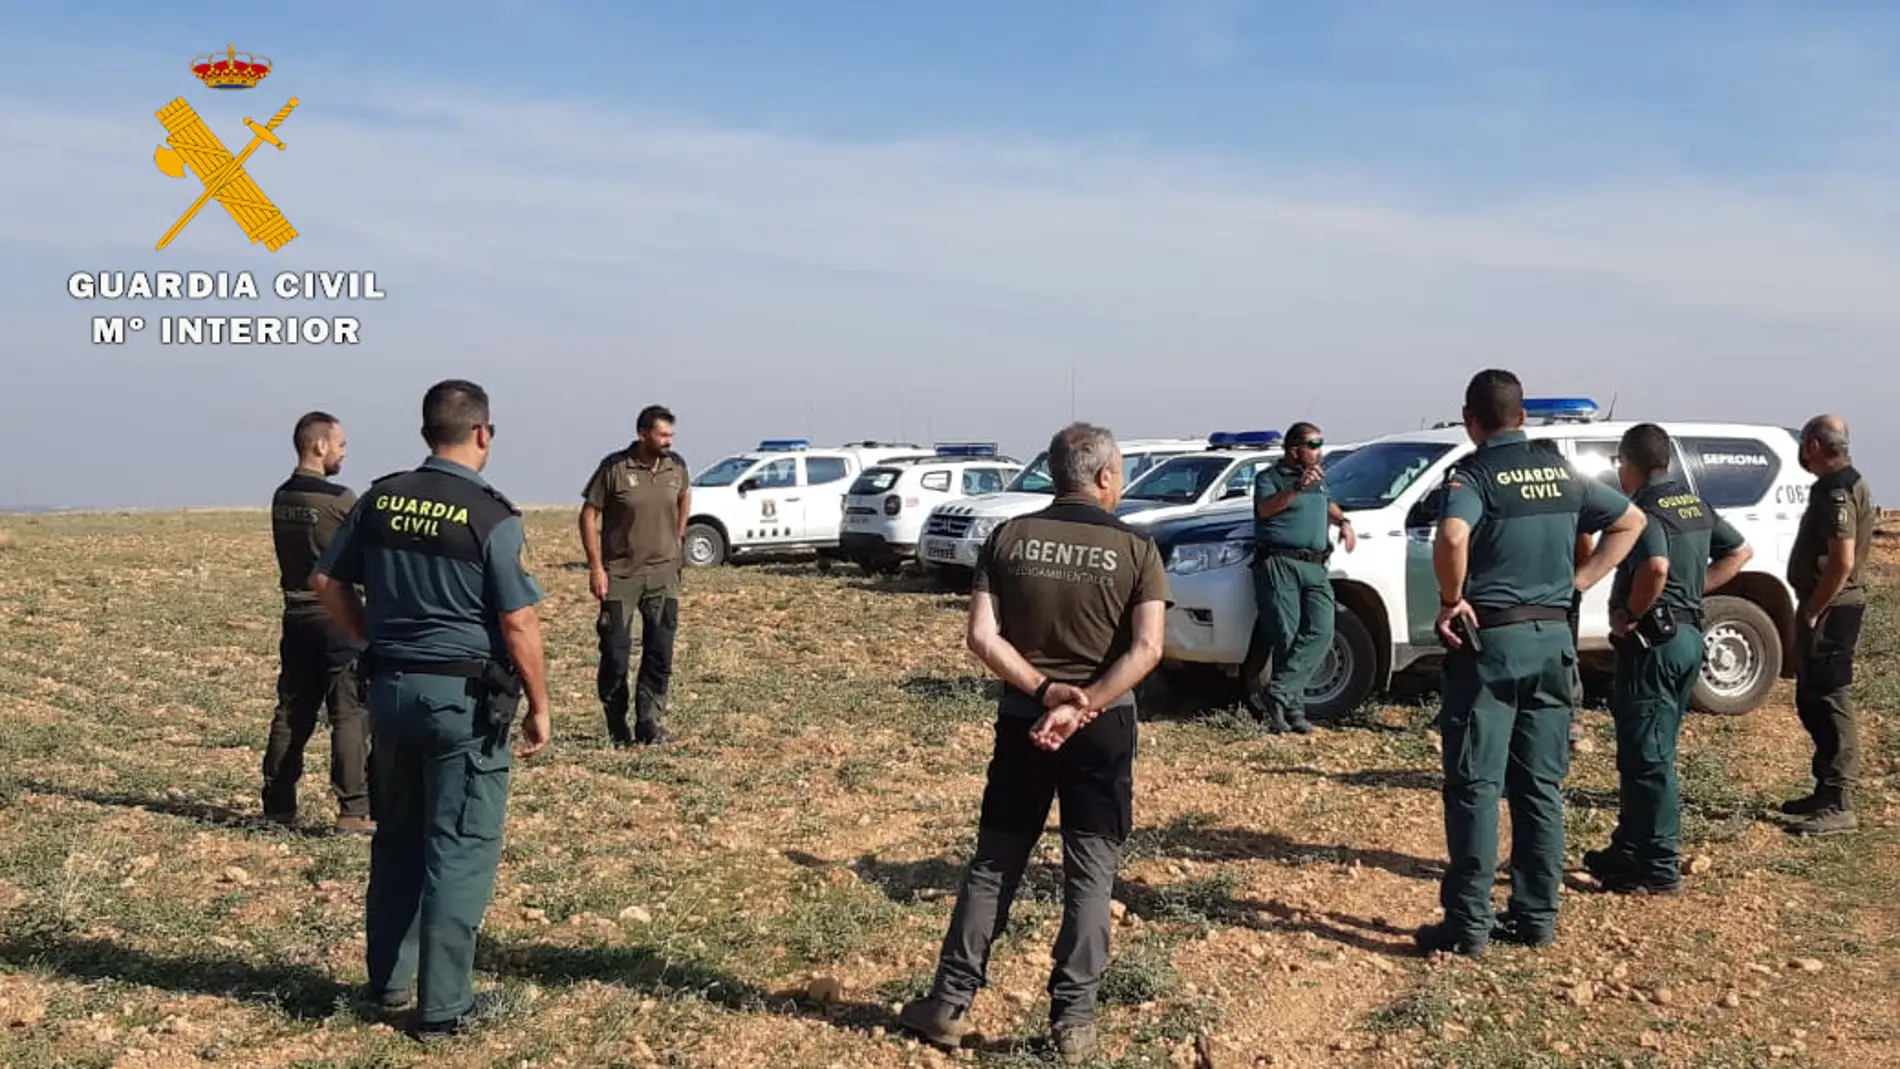  Inspeccionados varios cotos de caza de la provincia de Albacete en busca de cebos envenenados